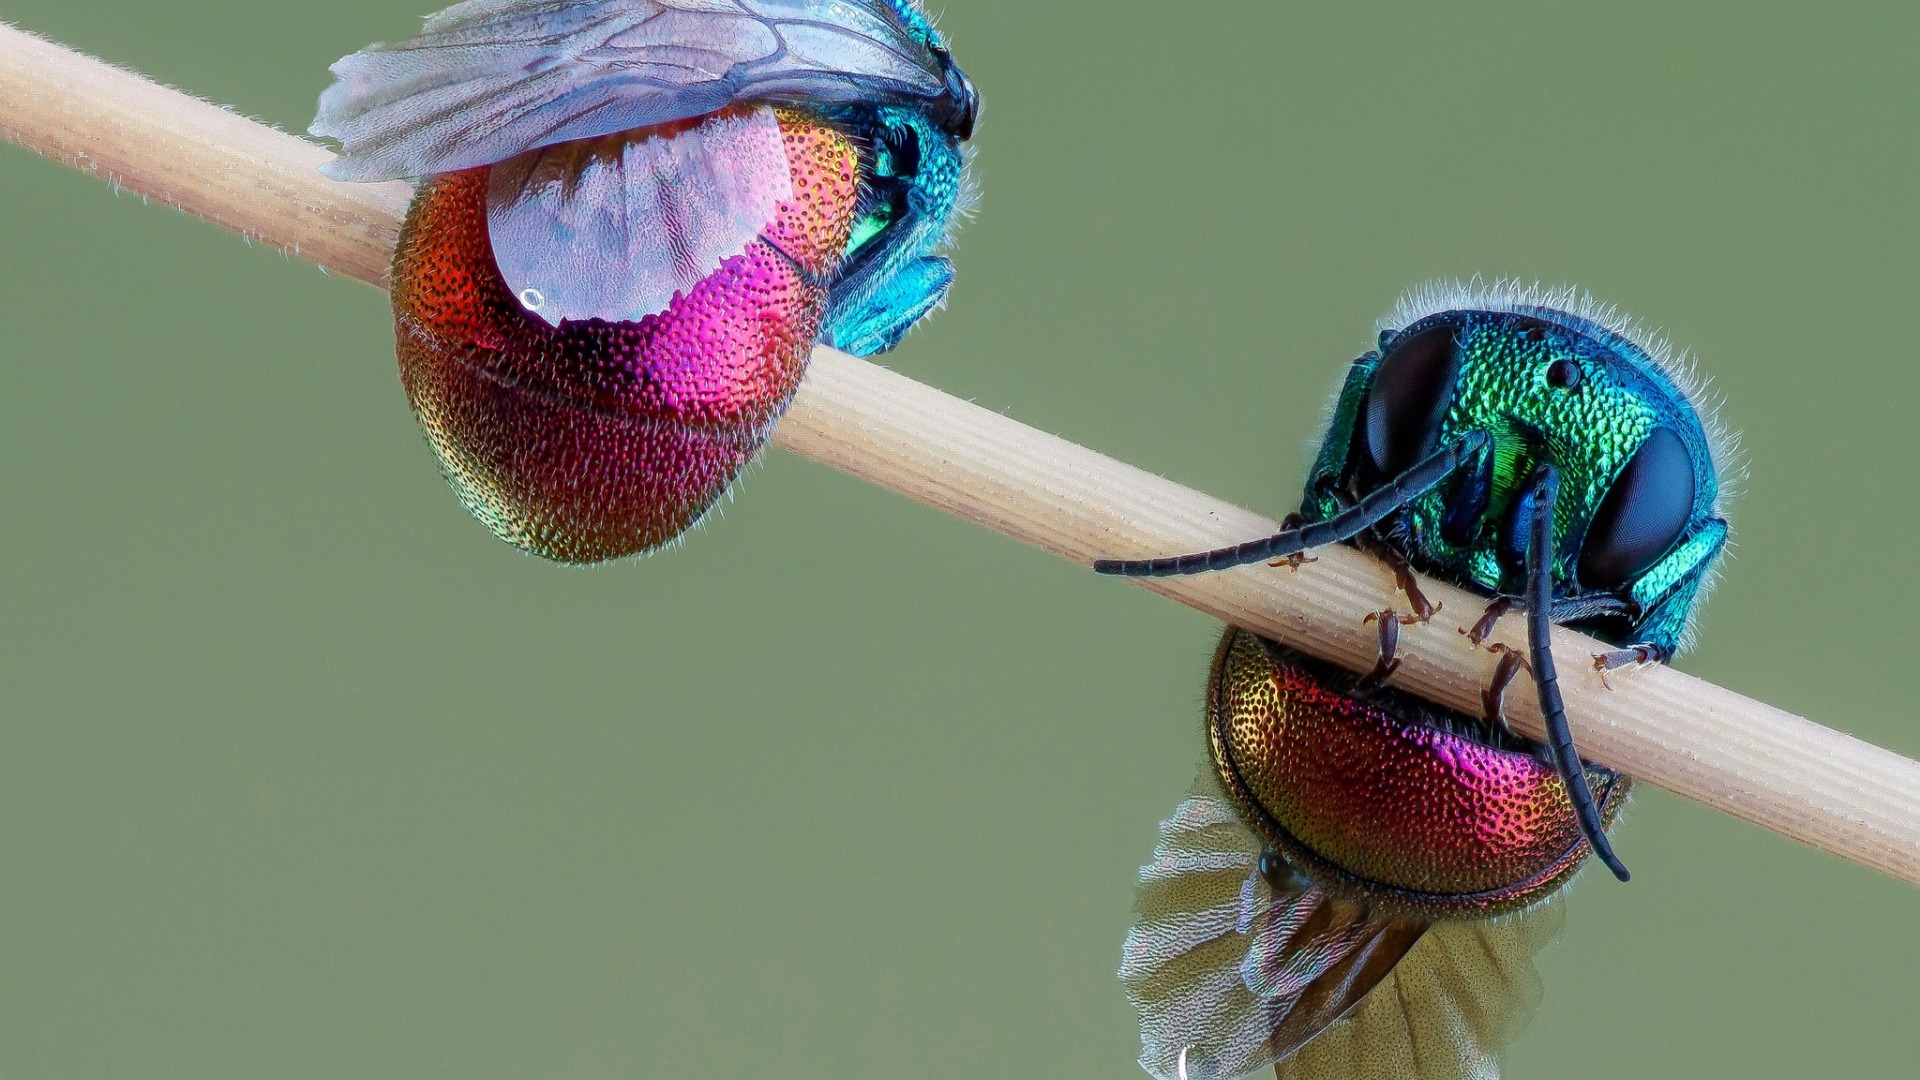 پرتره ای دیدنی از حشرات آینه ای هلوگرامی با بال های ابریشمی